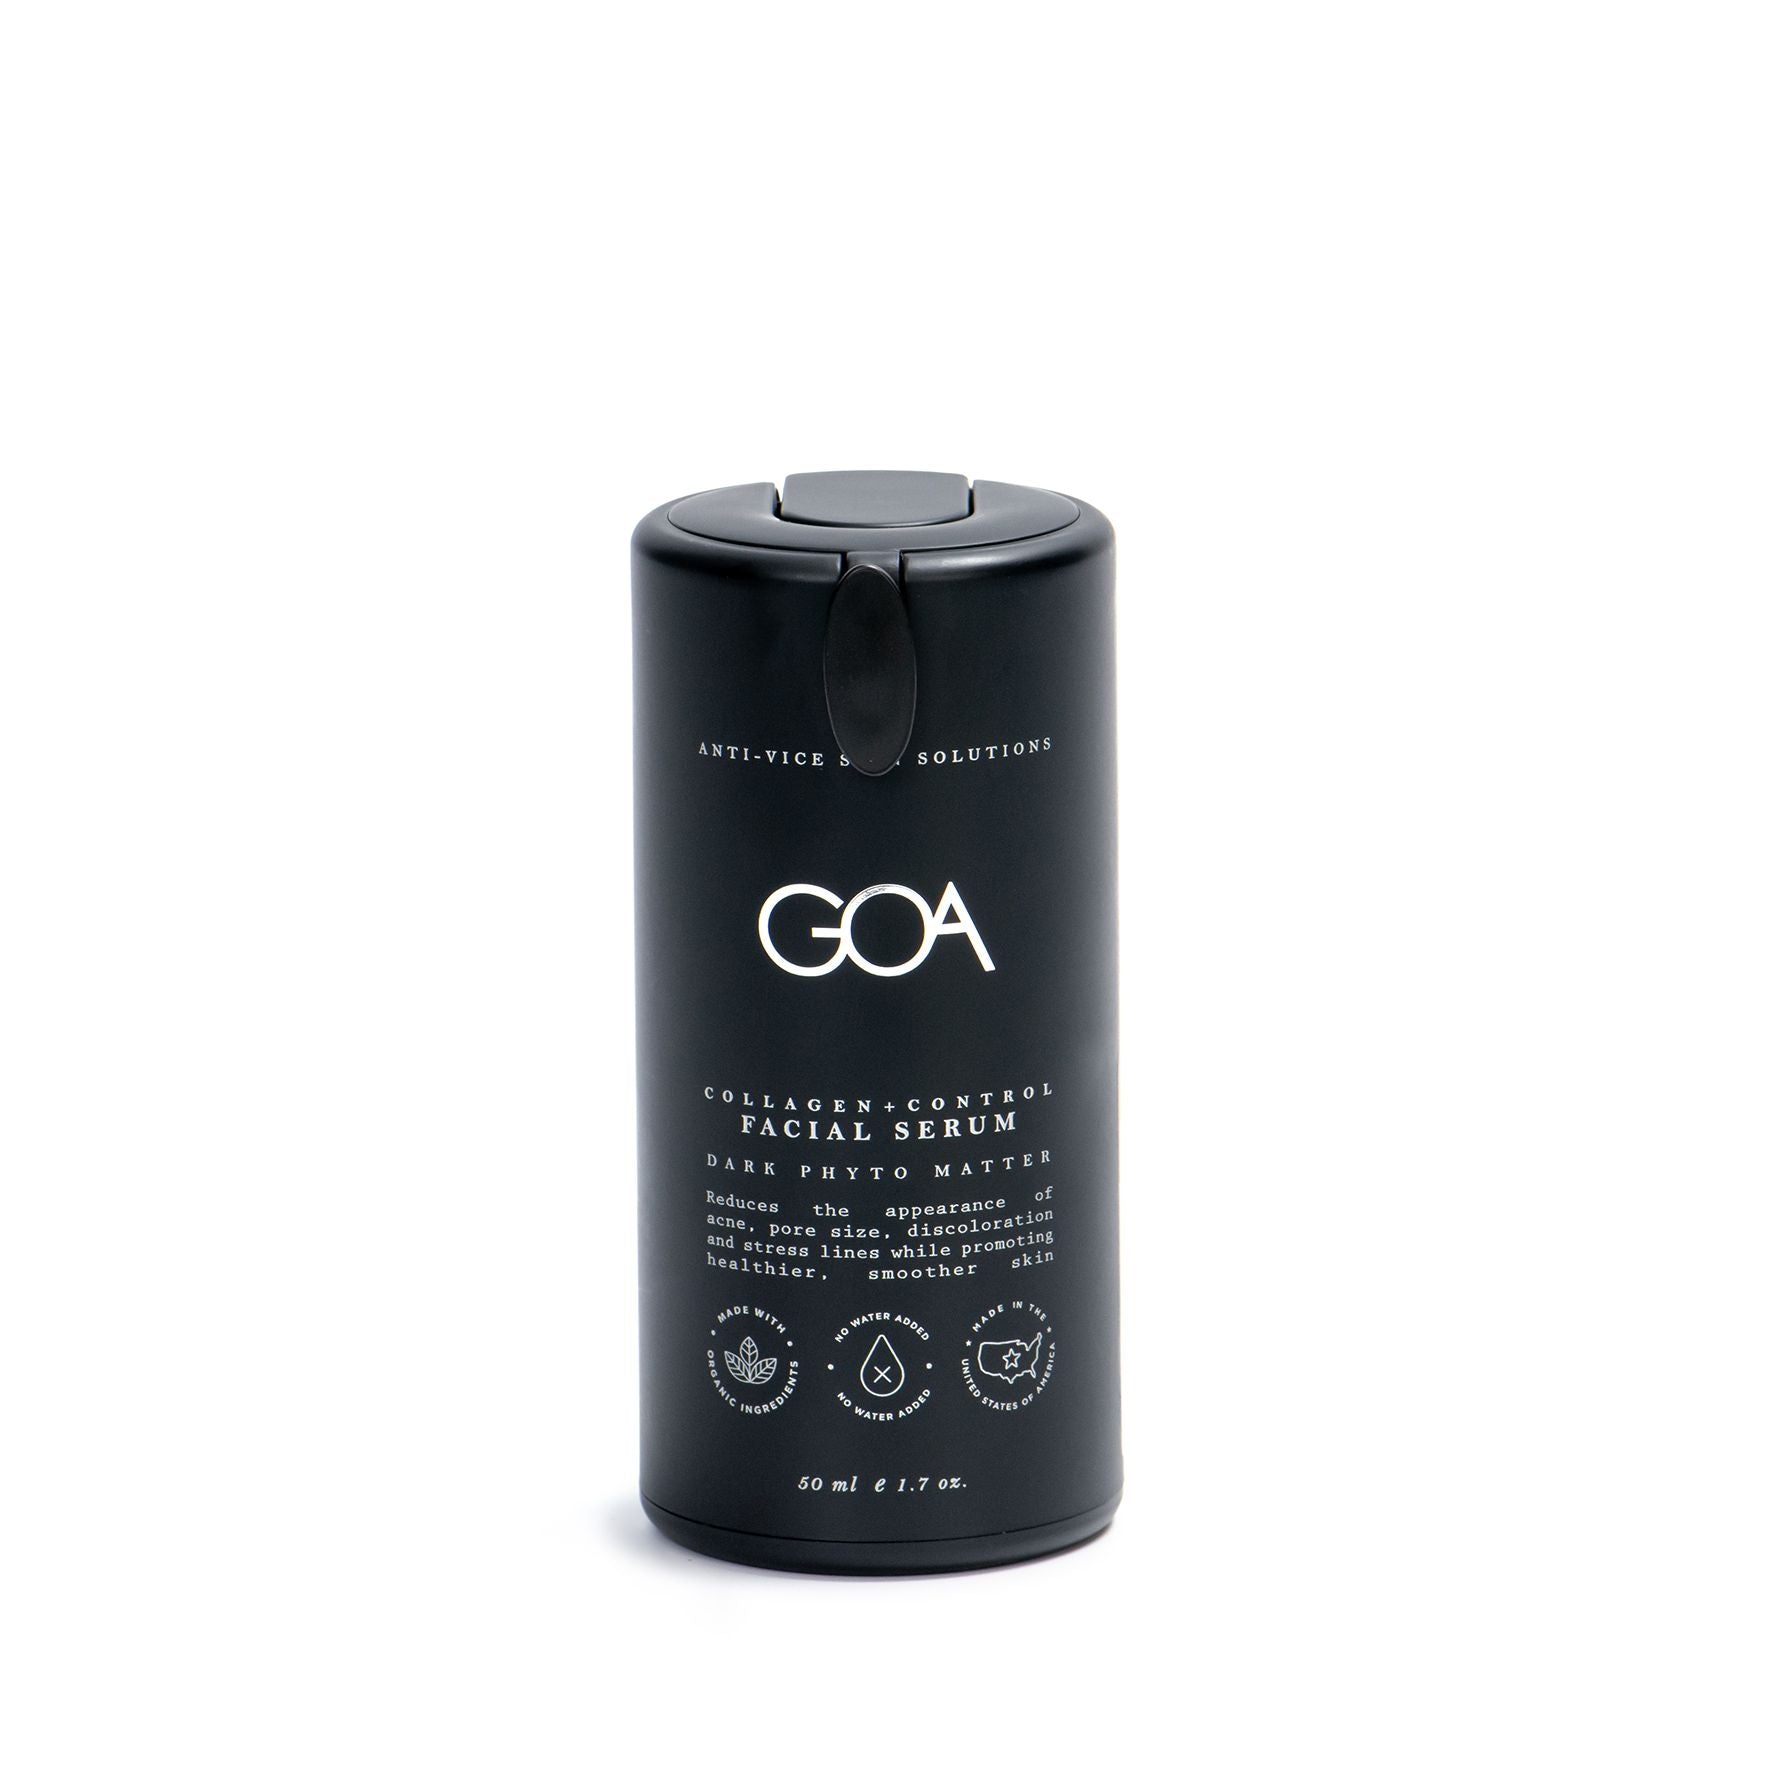 GOA - Collagen + Control Facial Serum